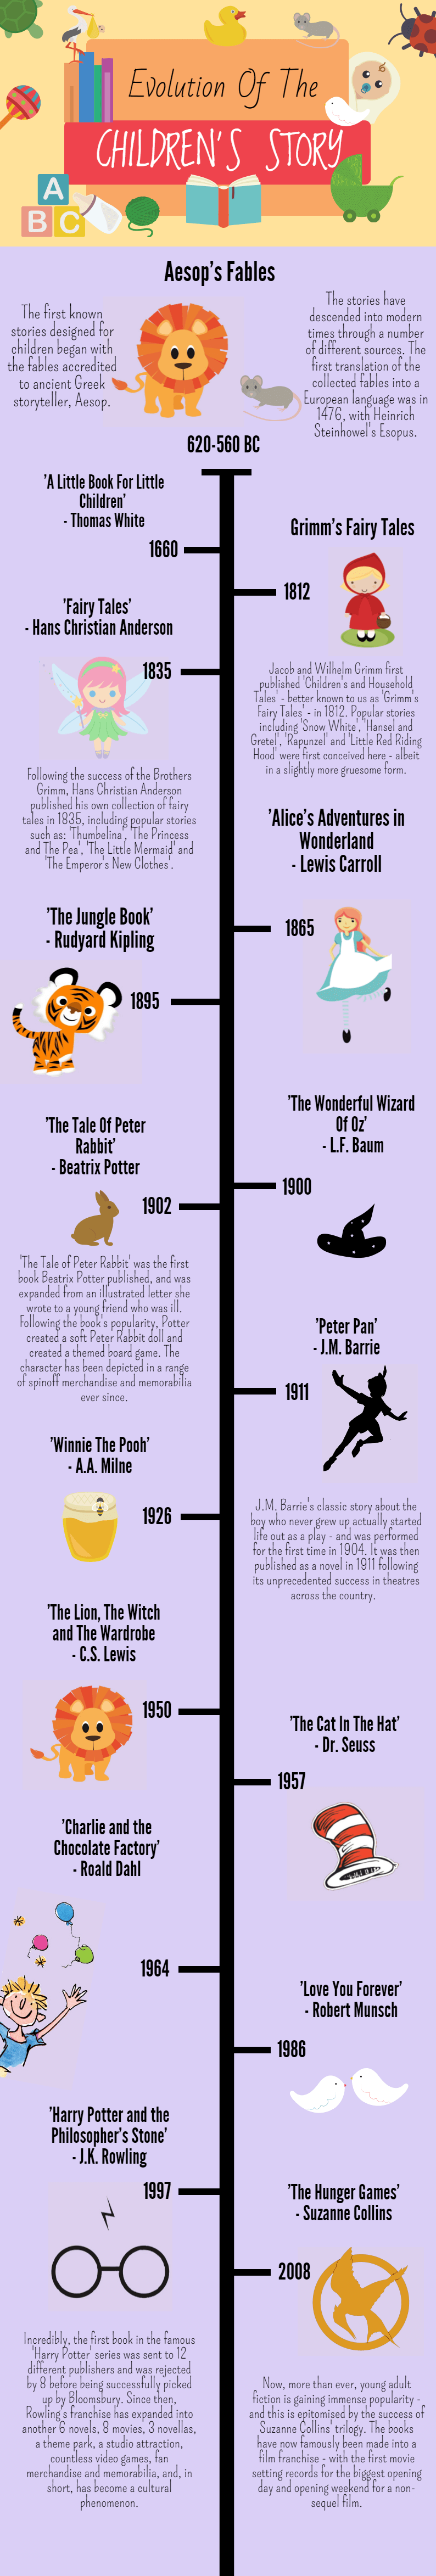 Evolution of the Children's Story